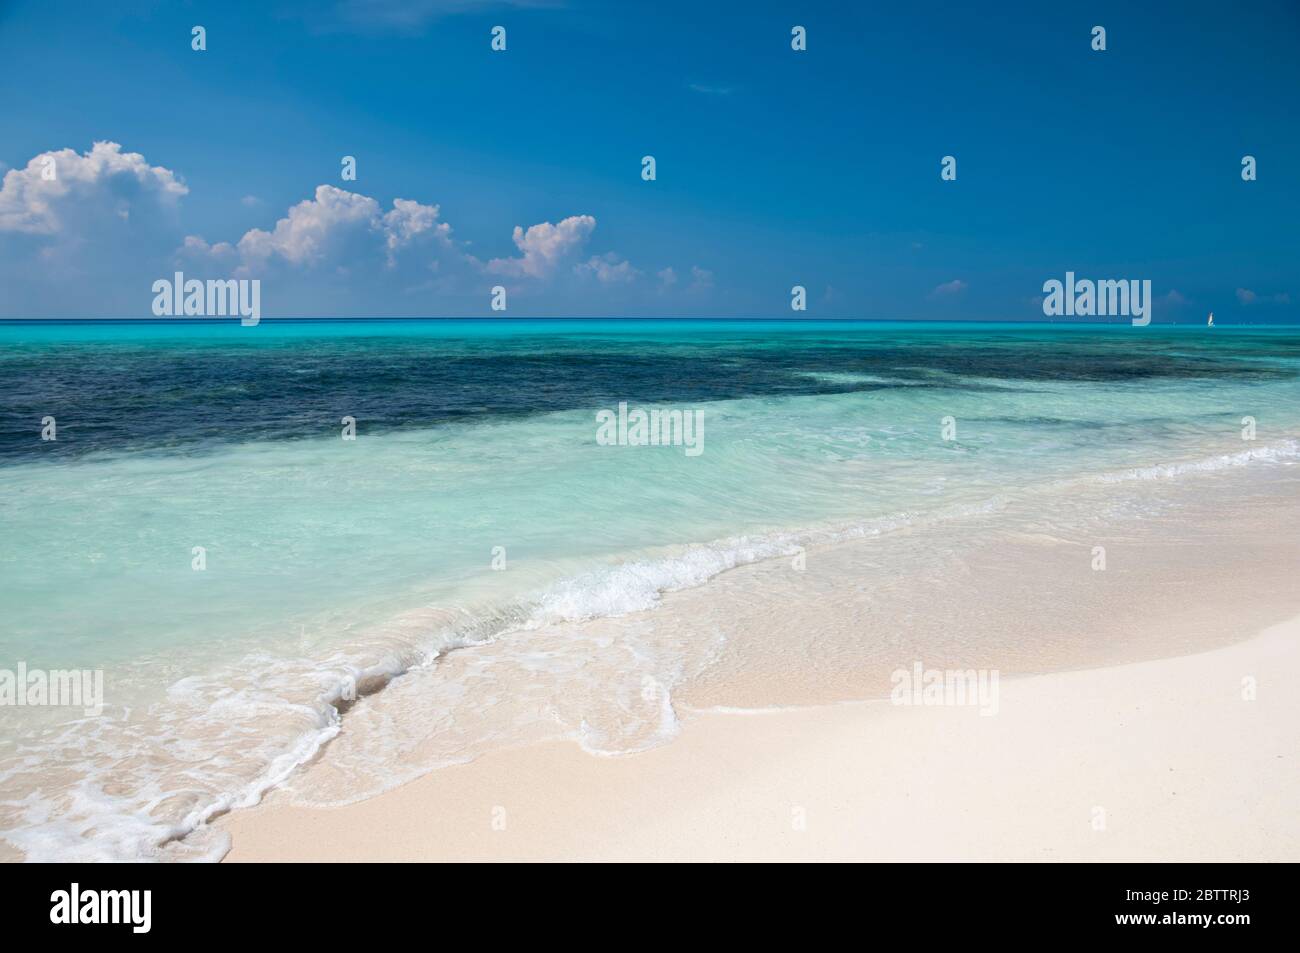 Menschenleerer und paradiesischer karibischer Strand, mit einem ruhigen und türkisfarbenen Meer, mit einem Segelboot, das bis zum Horizont segelt Stockfoto